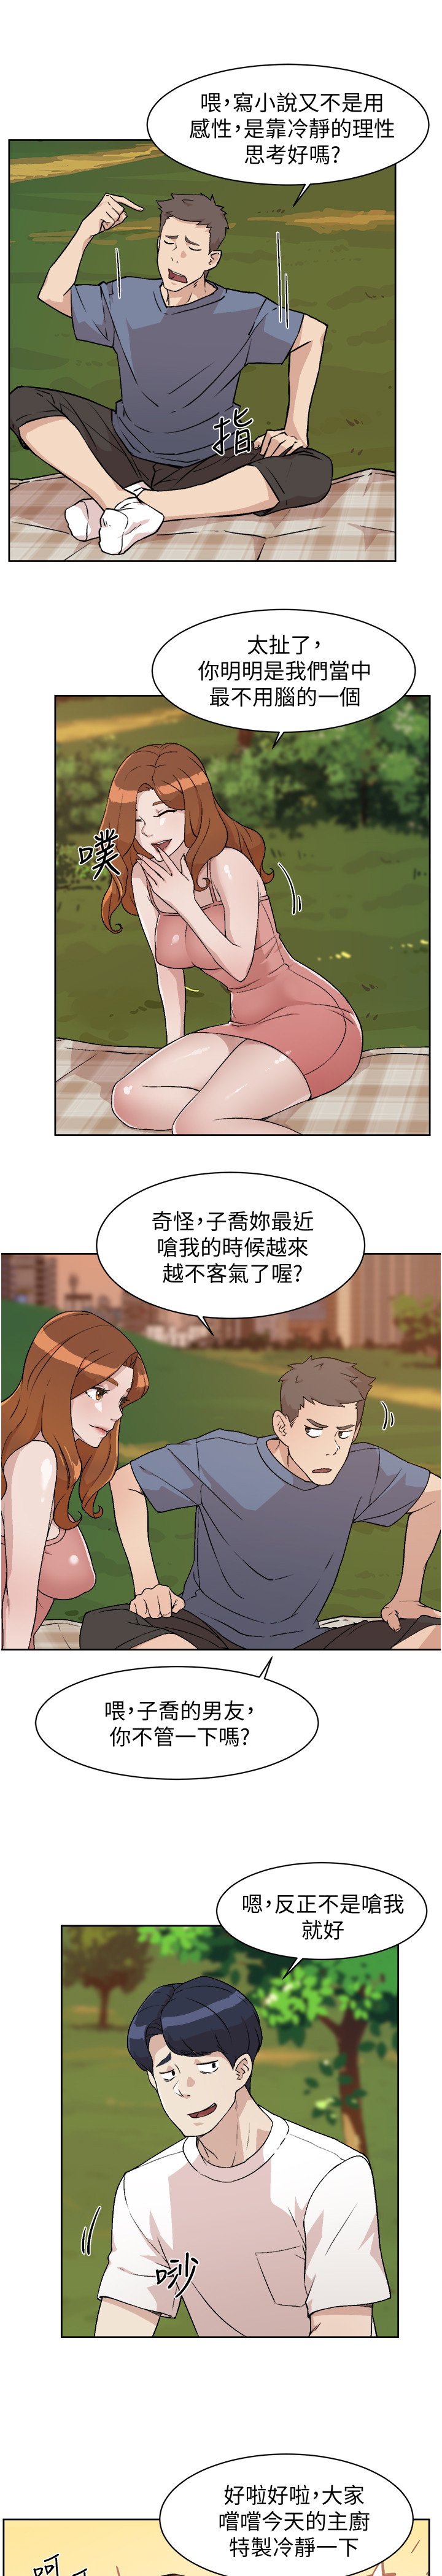 韩国污漫画 好友的私生活 第3话 3